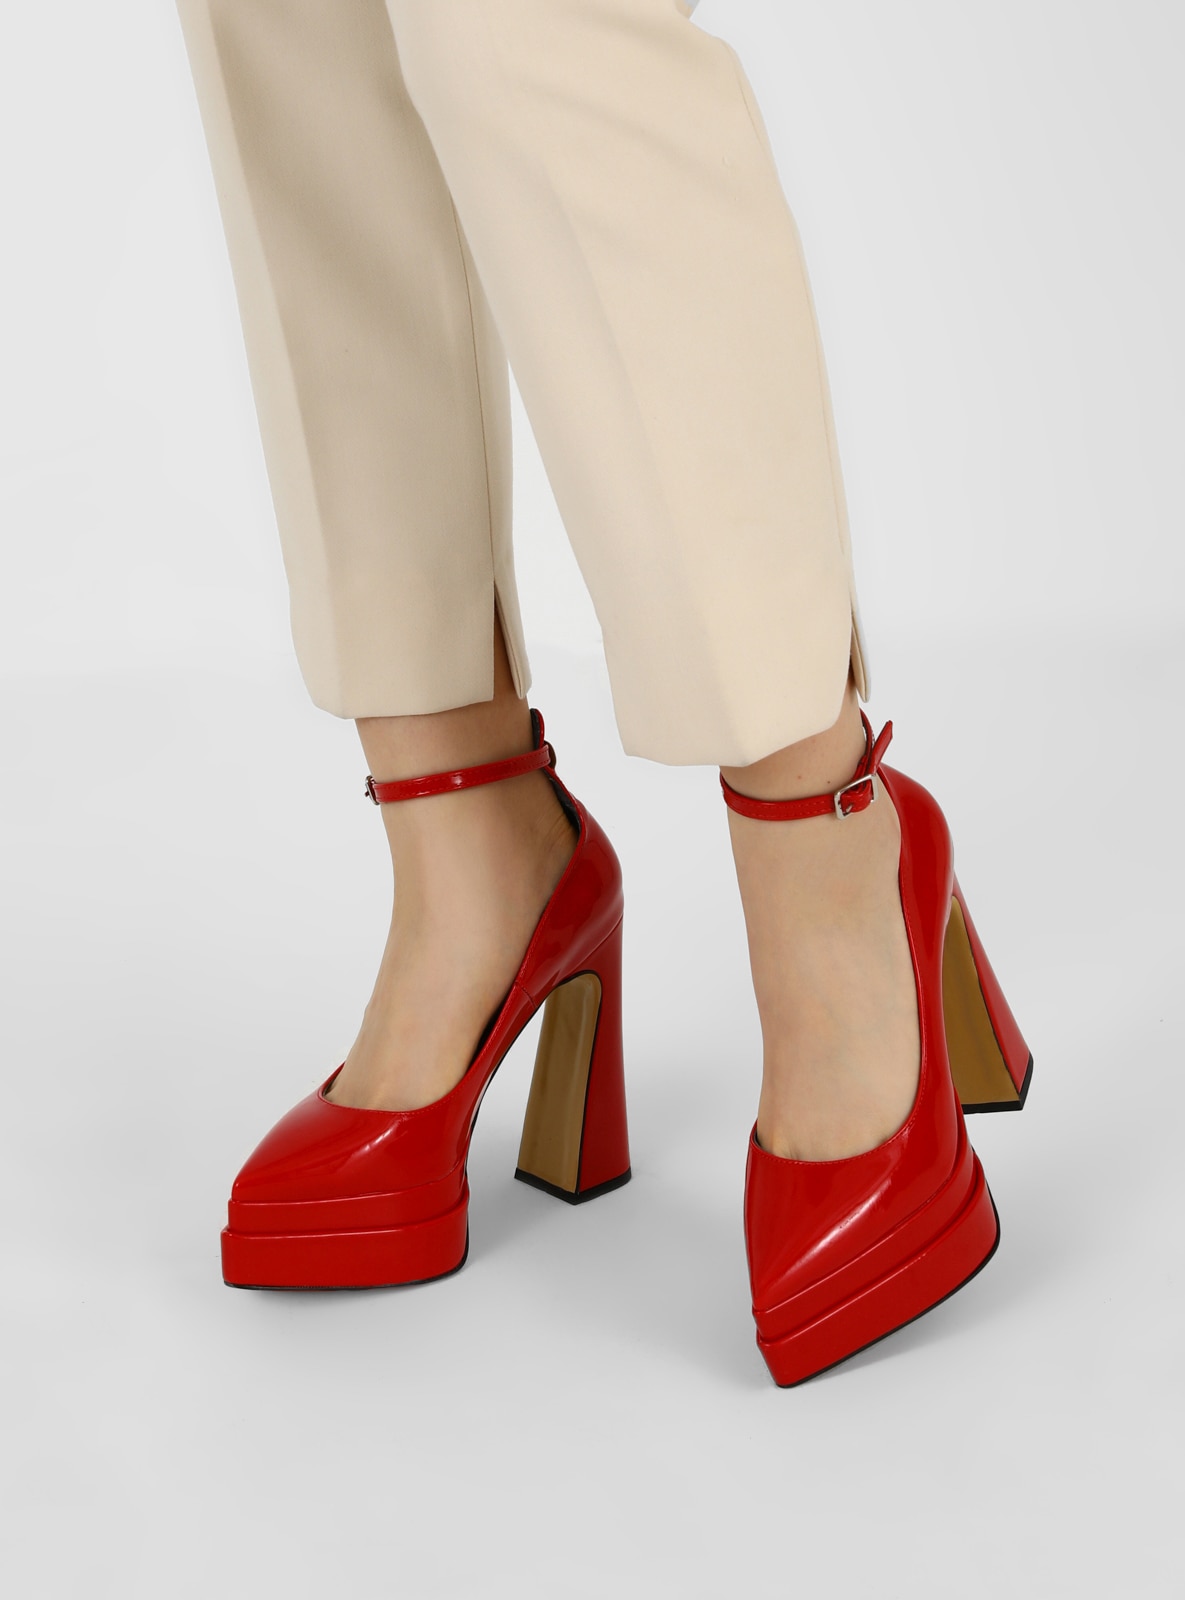 Banzai Ongelijkheid Hoes Red - High Heel - Evening Shoes